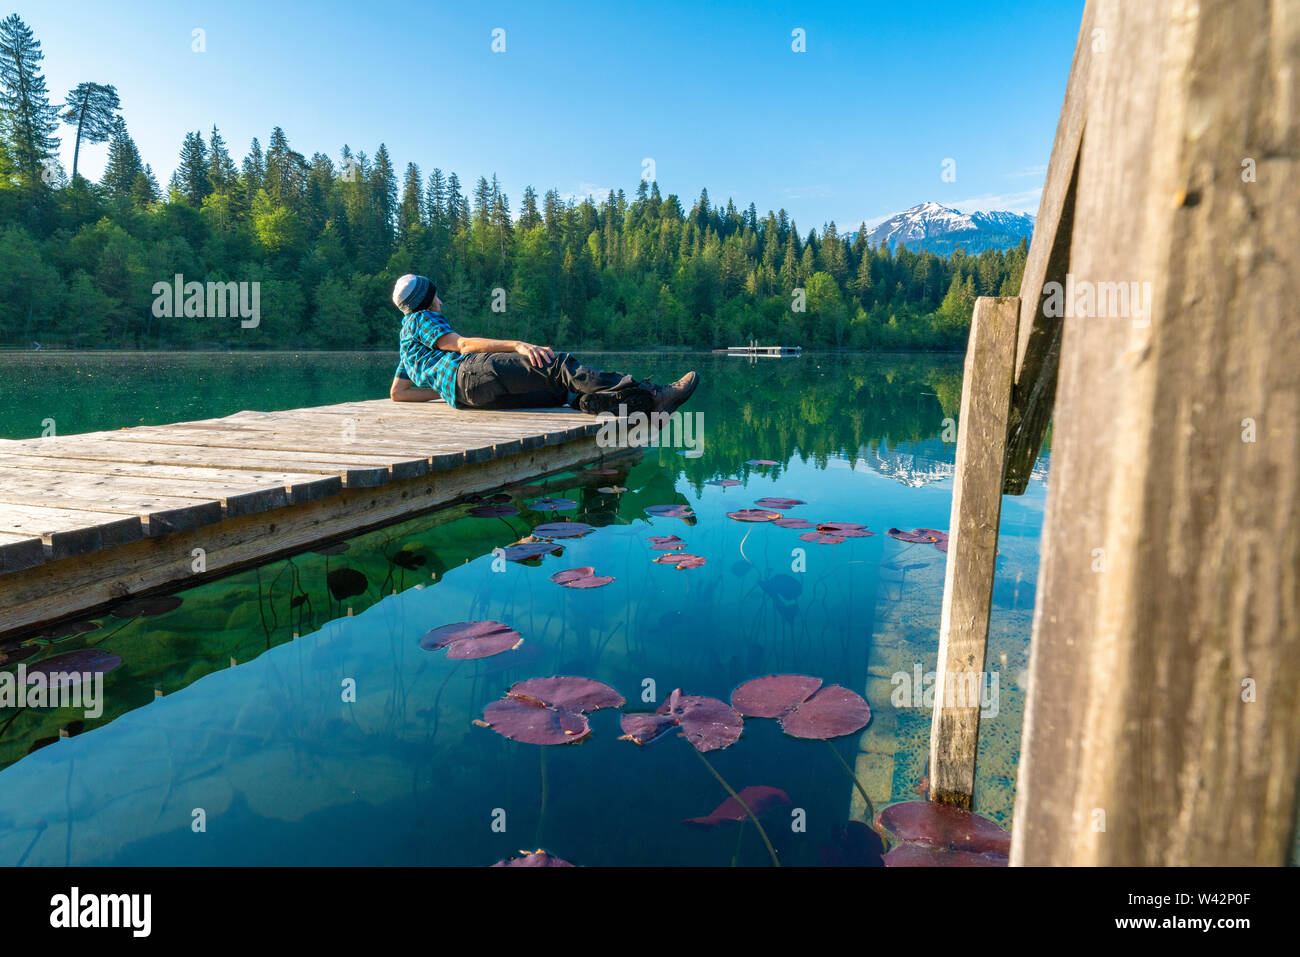 L'homme sur la plate-forme de détente en profitant de la vue du lac Cresta (Crestasee), Films, canton des Grisons, Suisse Banque D'Images